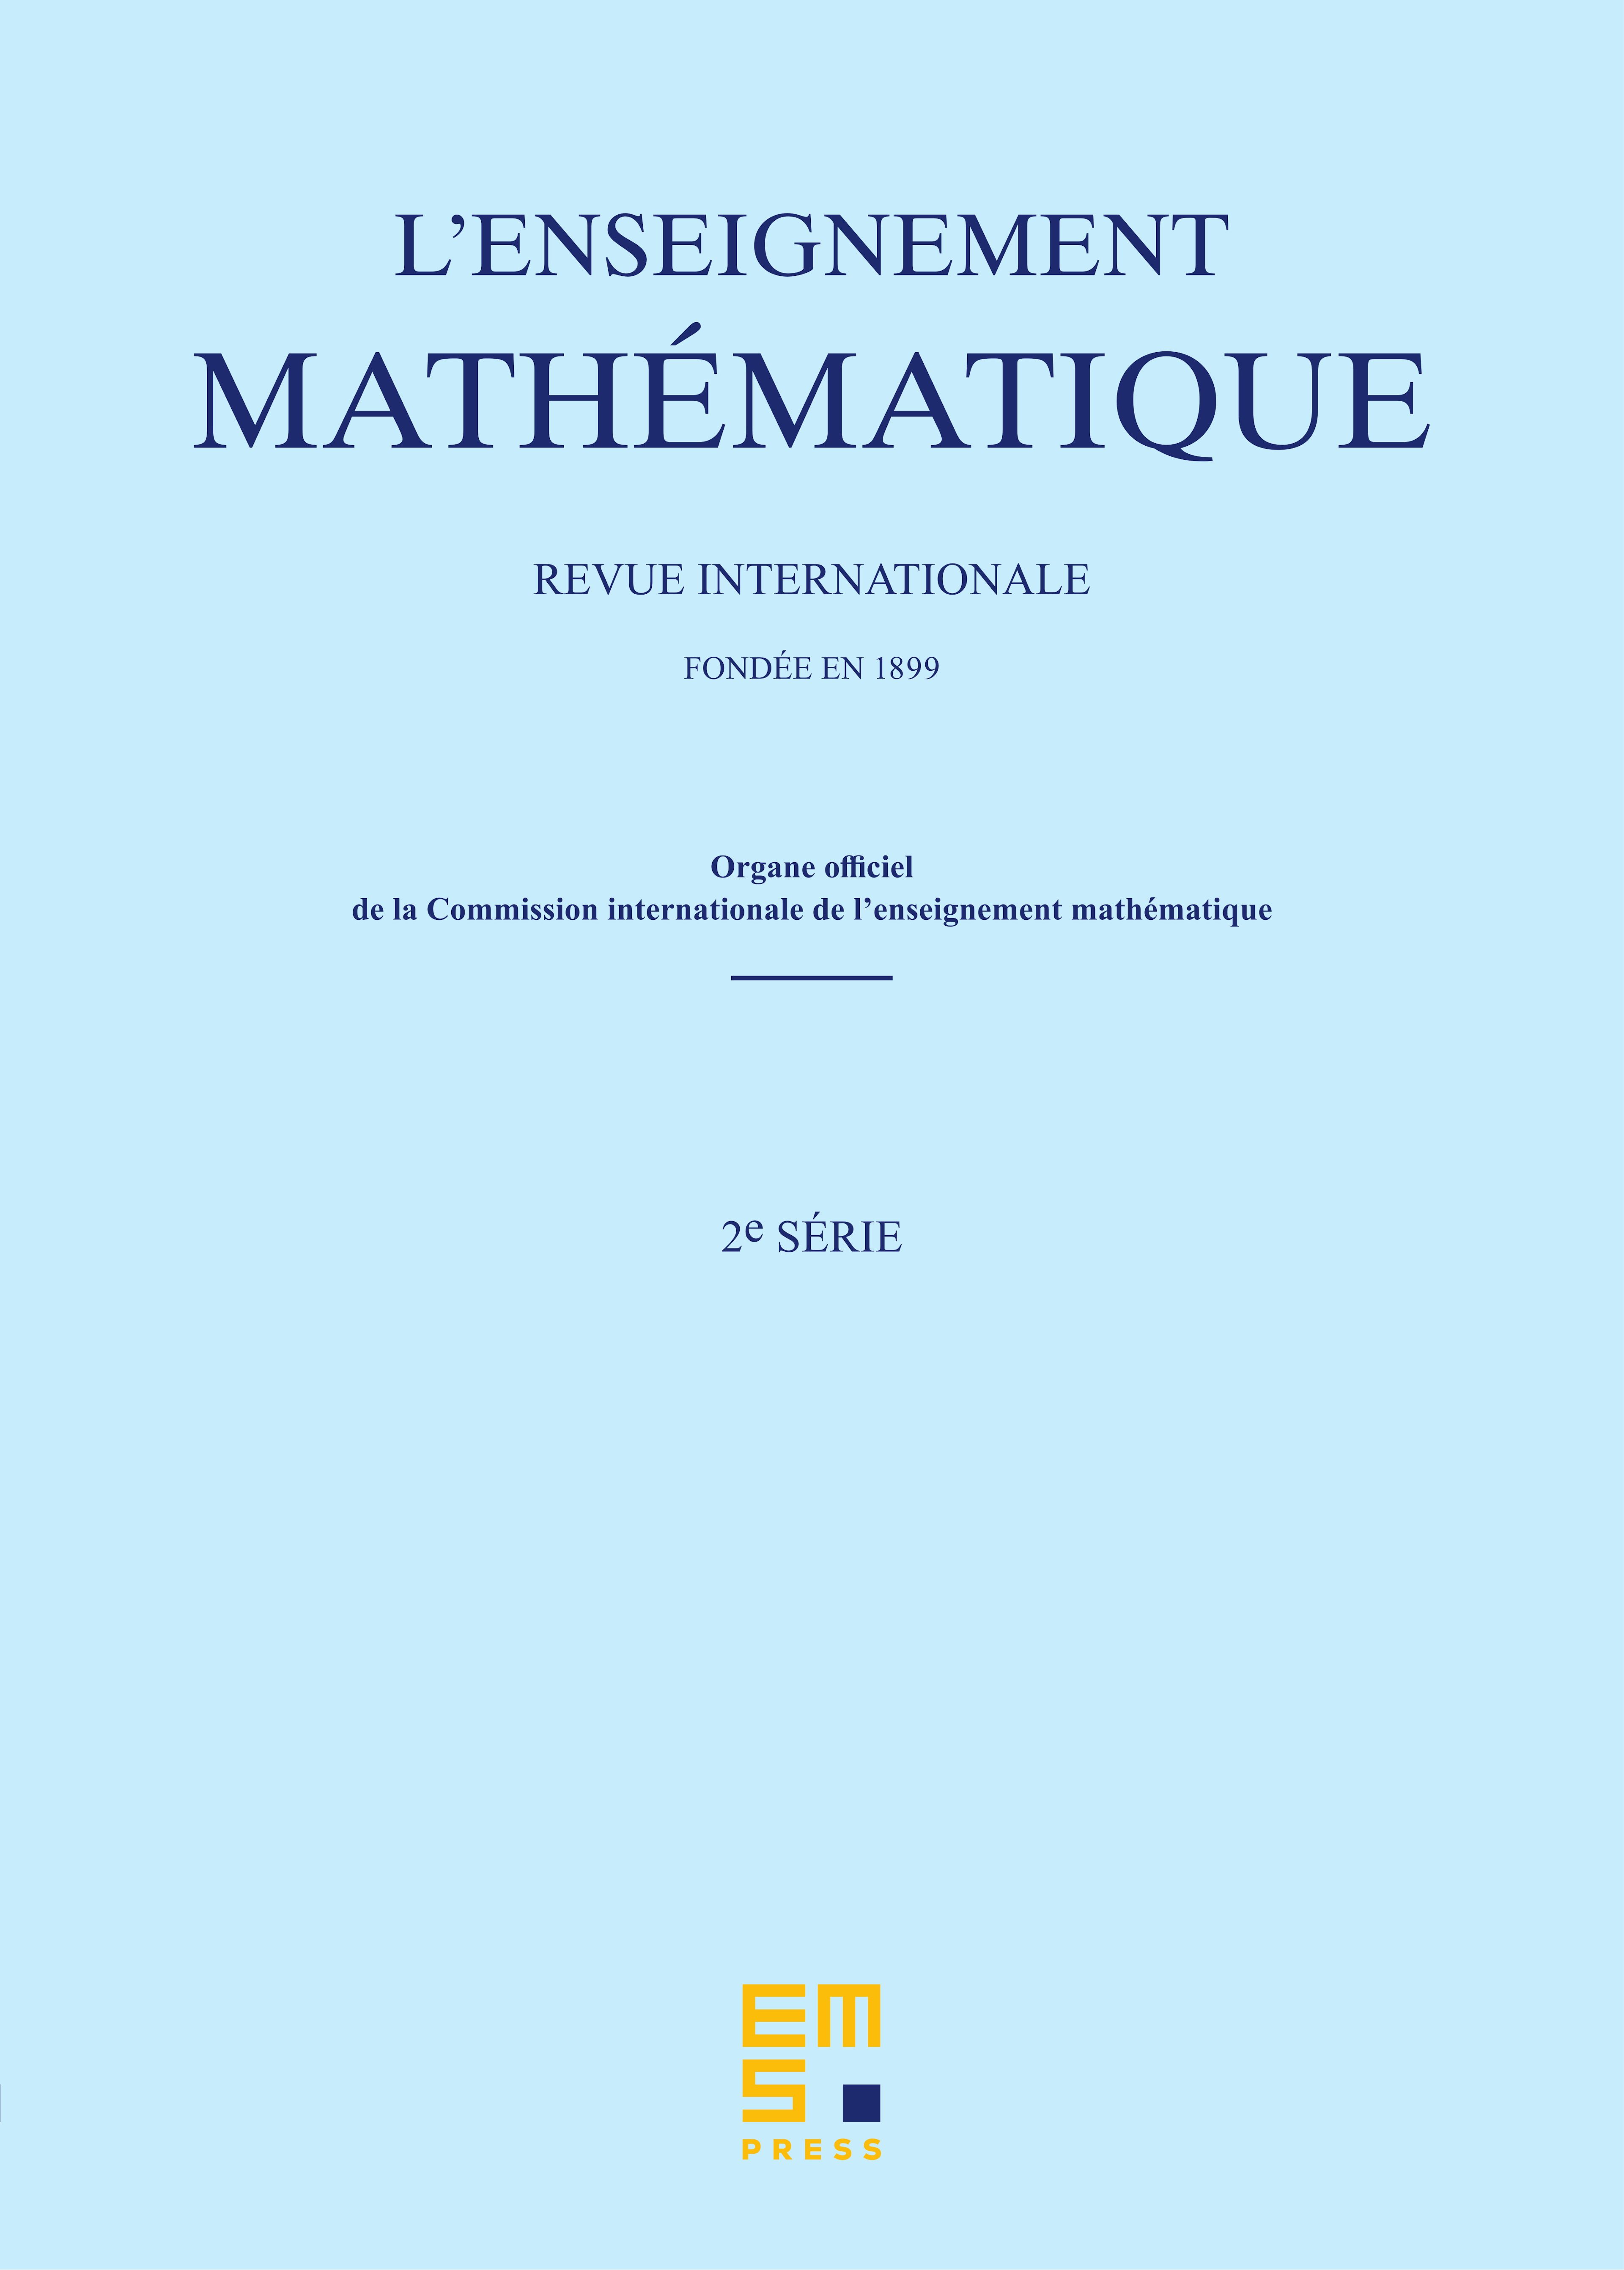 L’Enseignement Mathématique cover